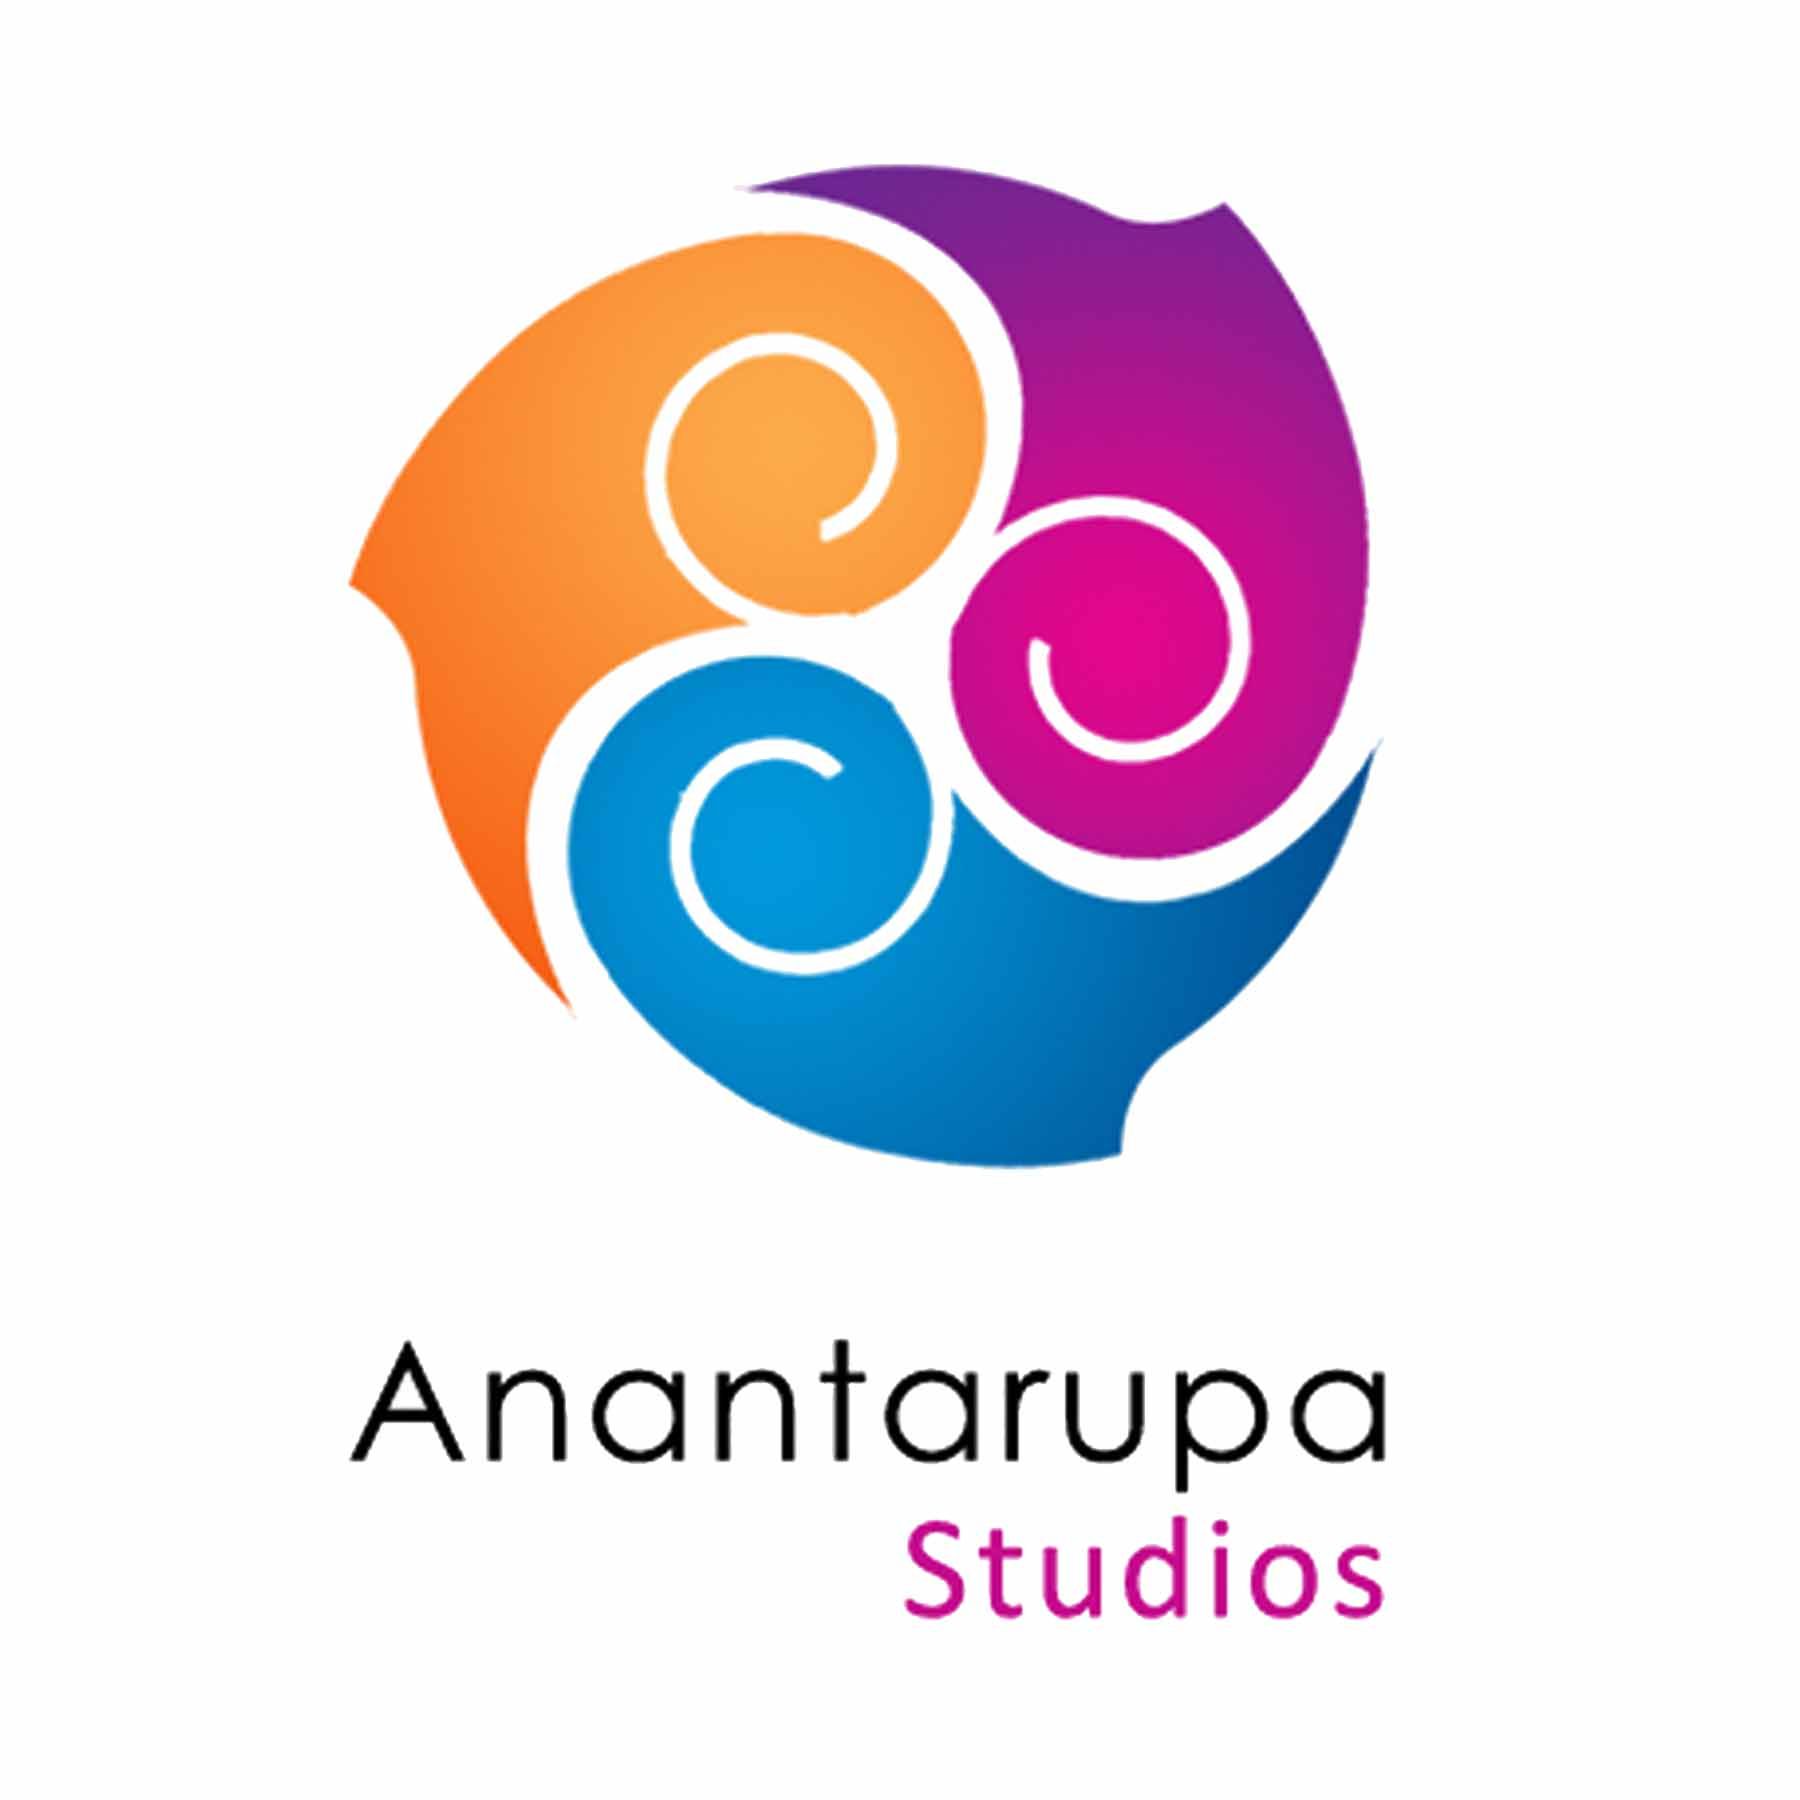 Anantarupa Studios